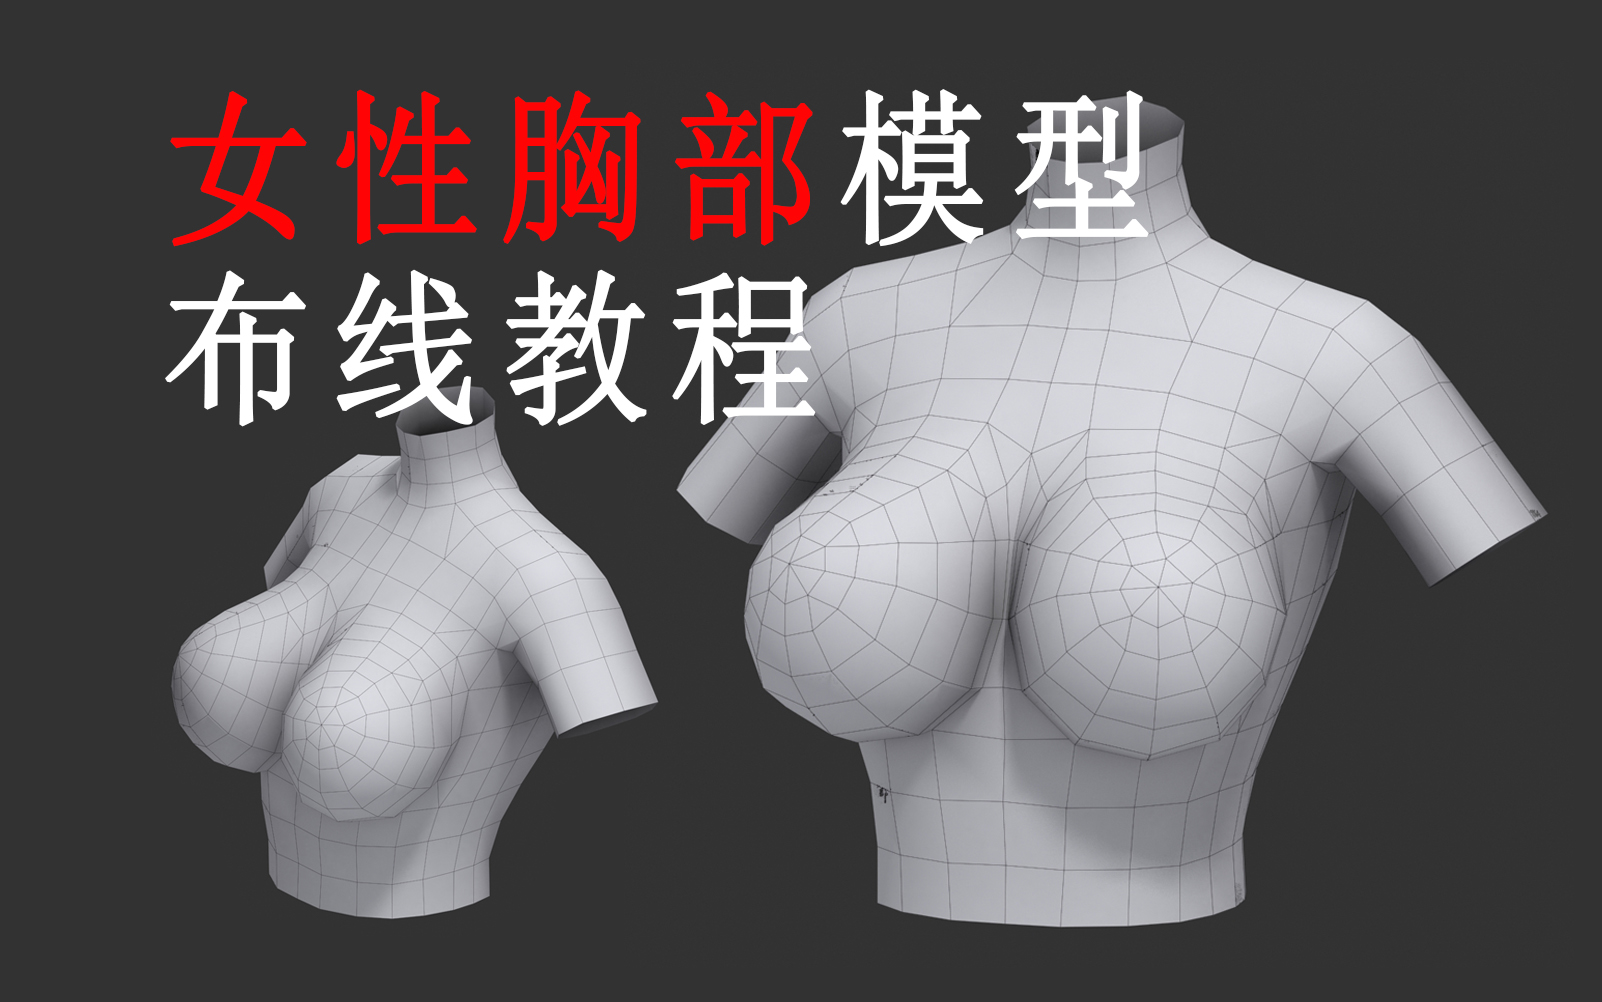 制作胸廓模型图片